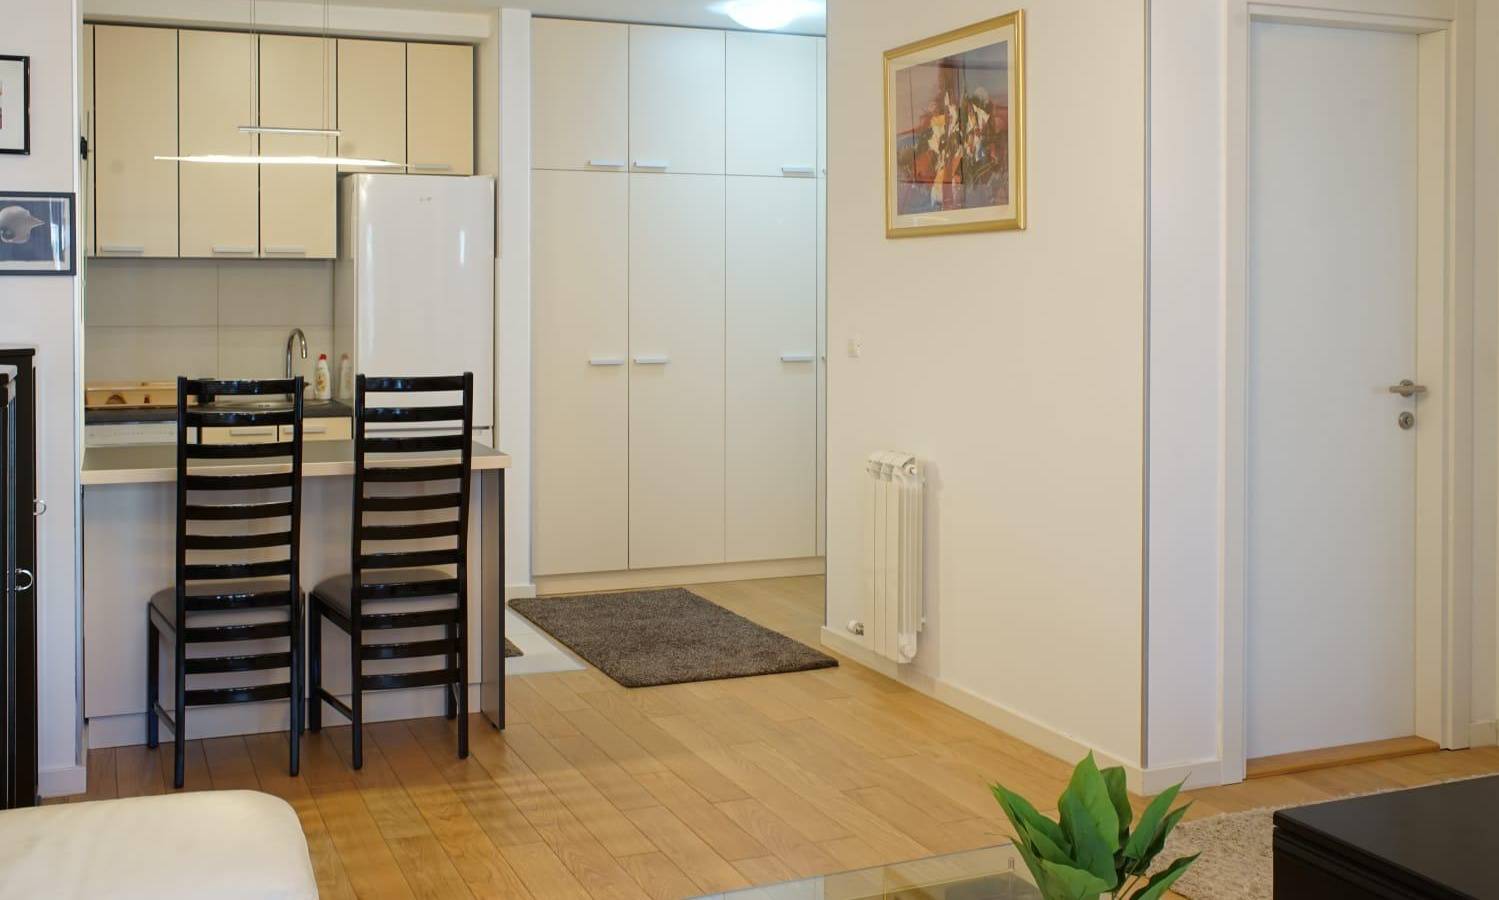 apartment Don 2, A Blok Savada, Belgrade